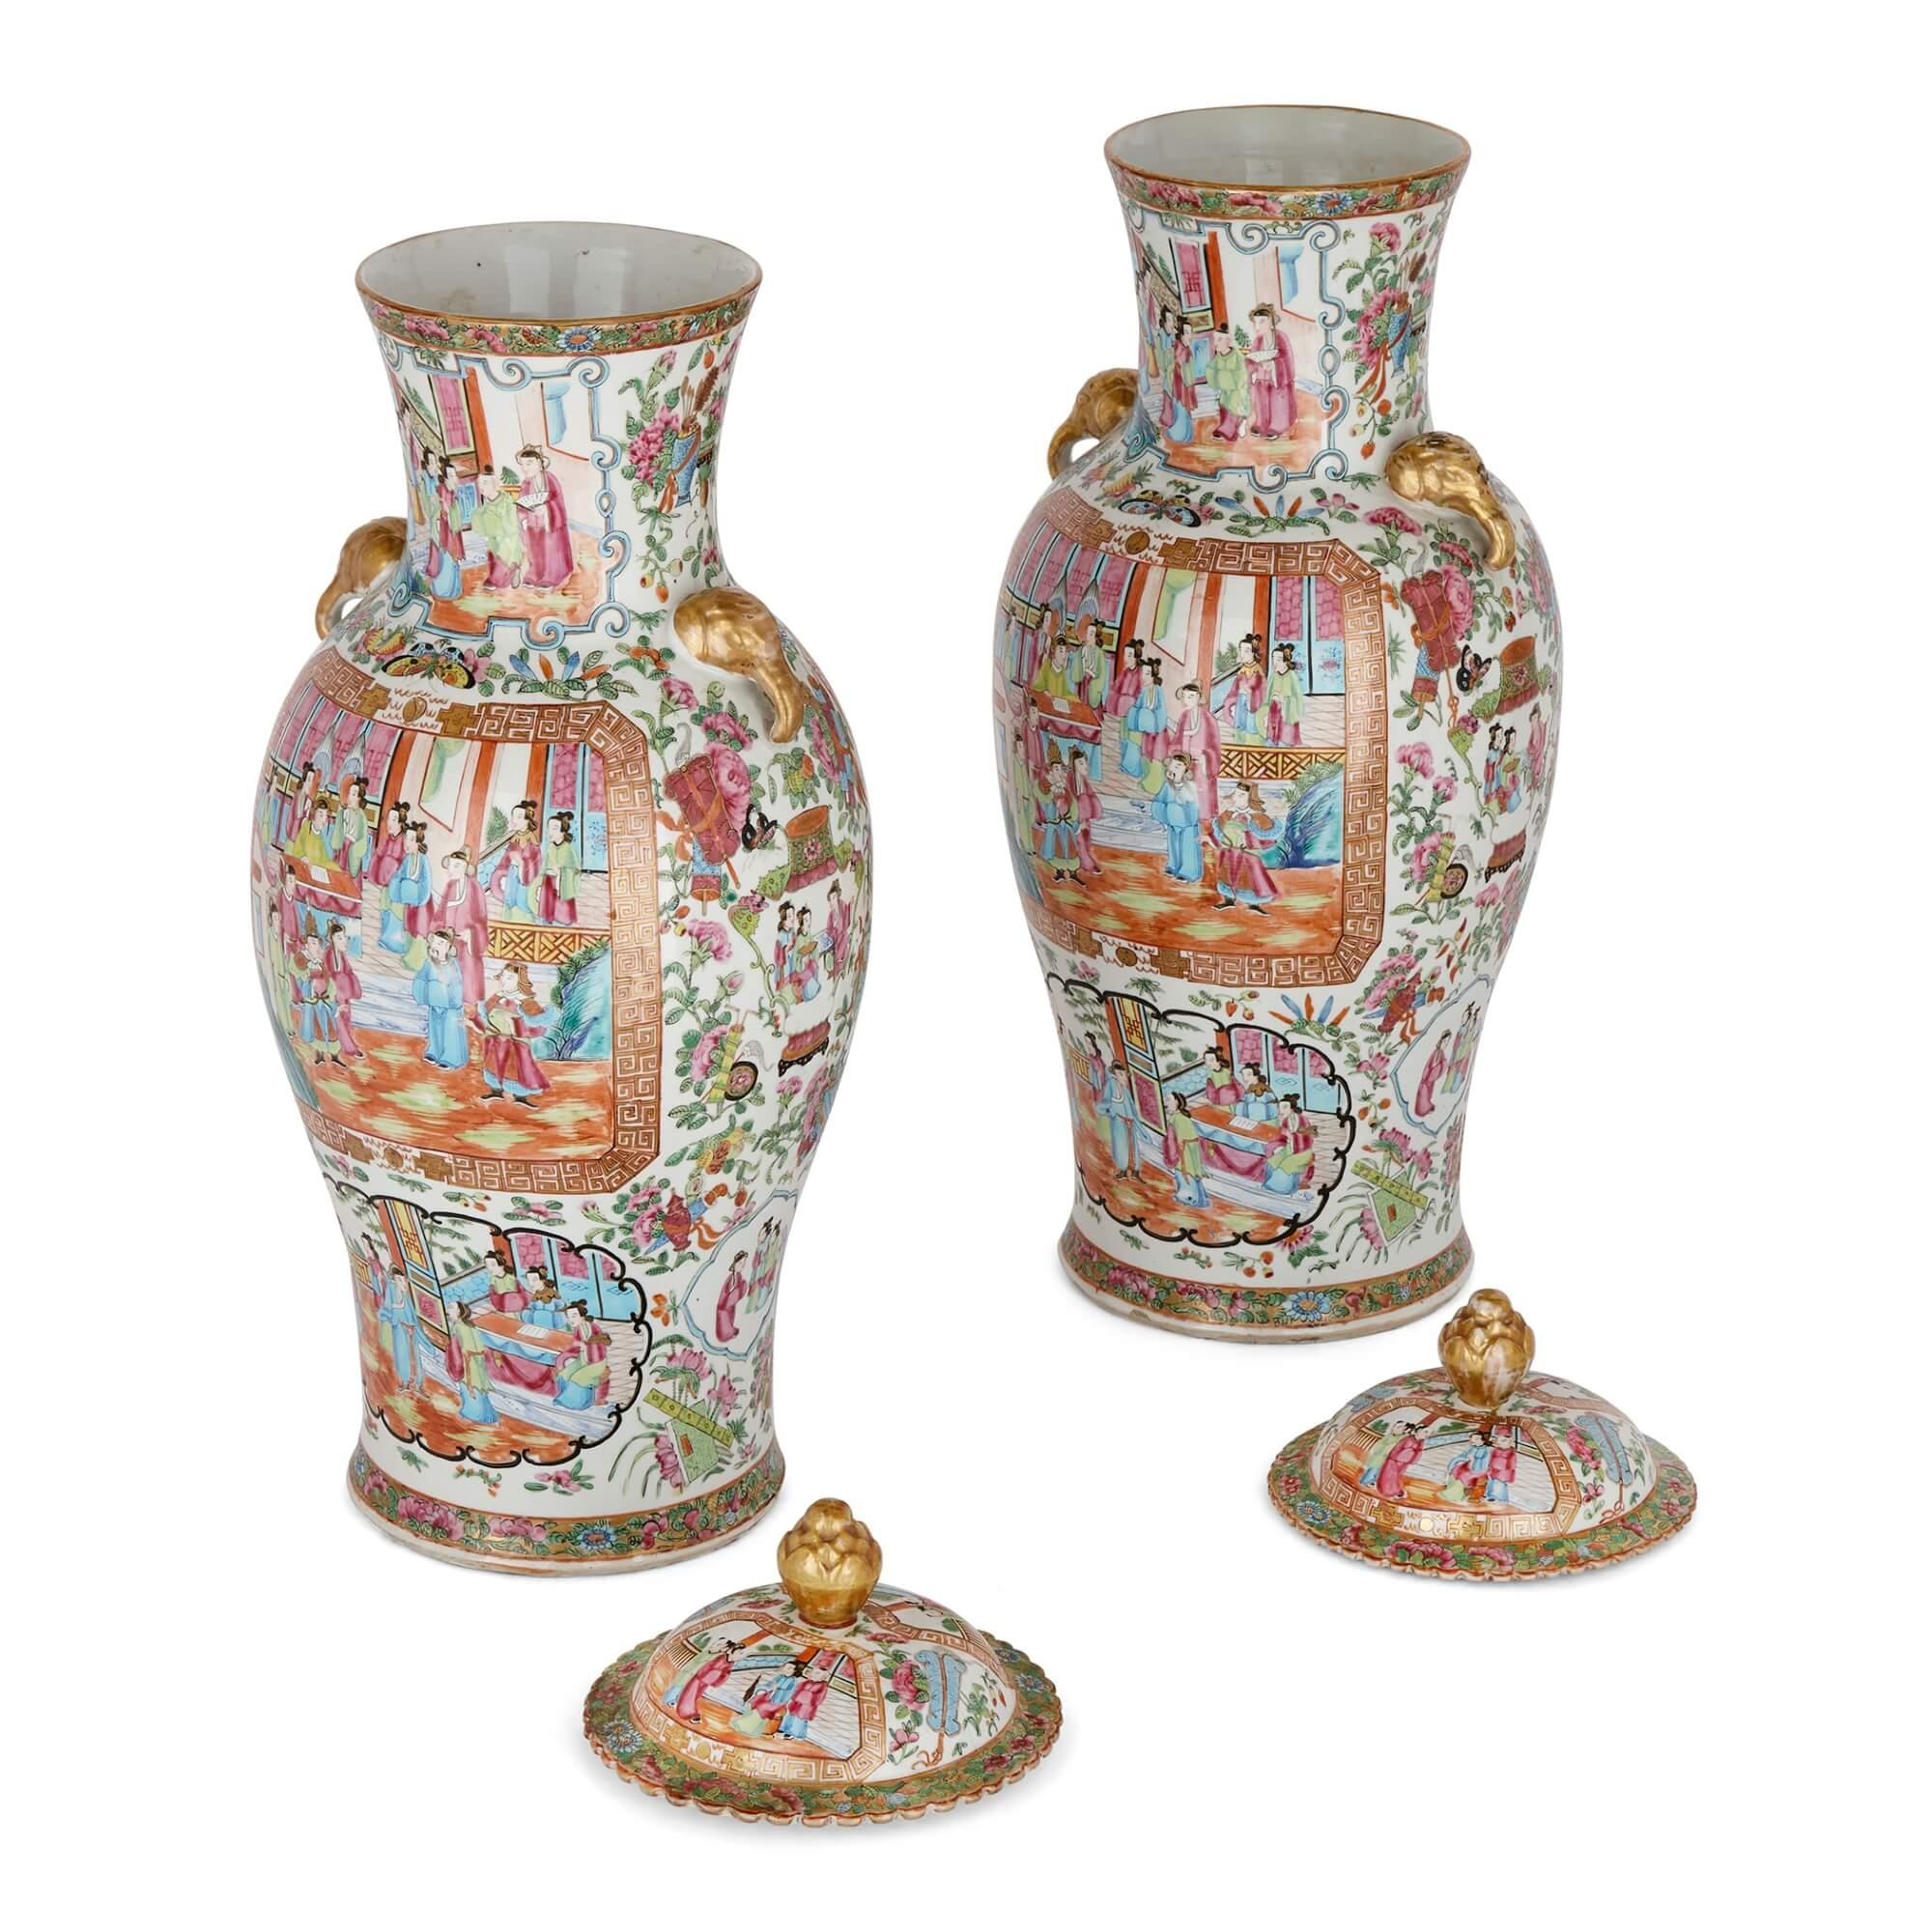 Paire de grands vases en porcelaine famille rose de style Canton.
Chinois, Fin du XIXe siècle.
Mesures : Hauteur 64 cm, diamètre 25 cm.

Fabriqués dans la Chine de la dynastie Qing à la fin du XIXe siècle pour le marché de l'exportation, ces